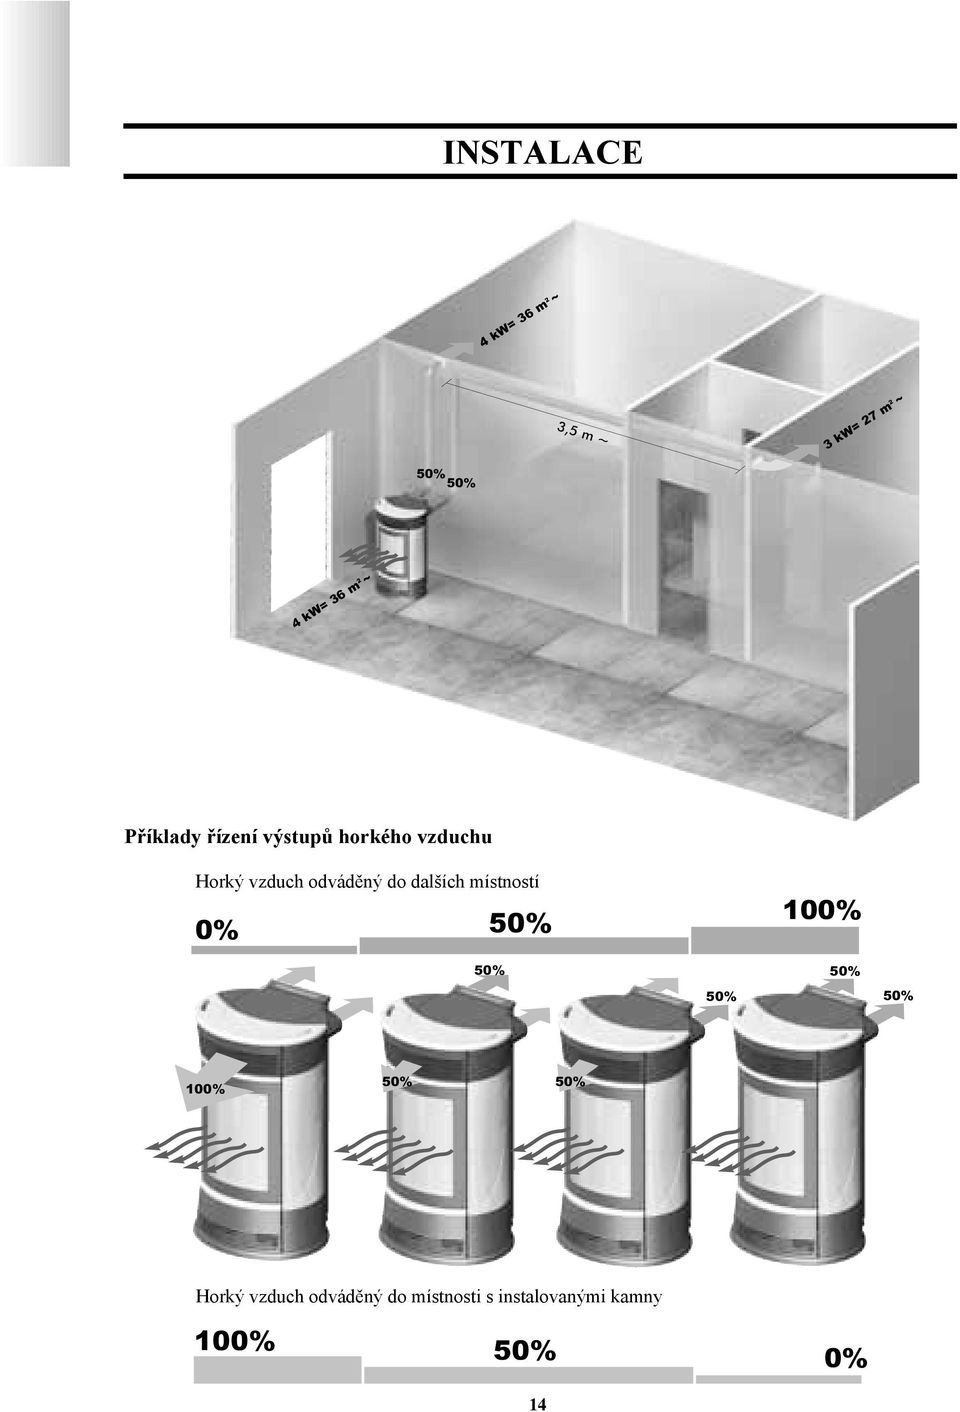 50% 50% 50% 00% 50% 50% Horký vzduch odváděný do místnosti s instalovanými kamny